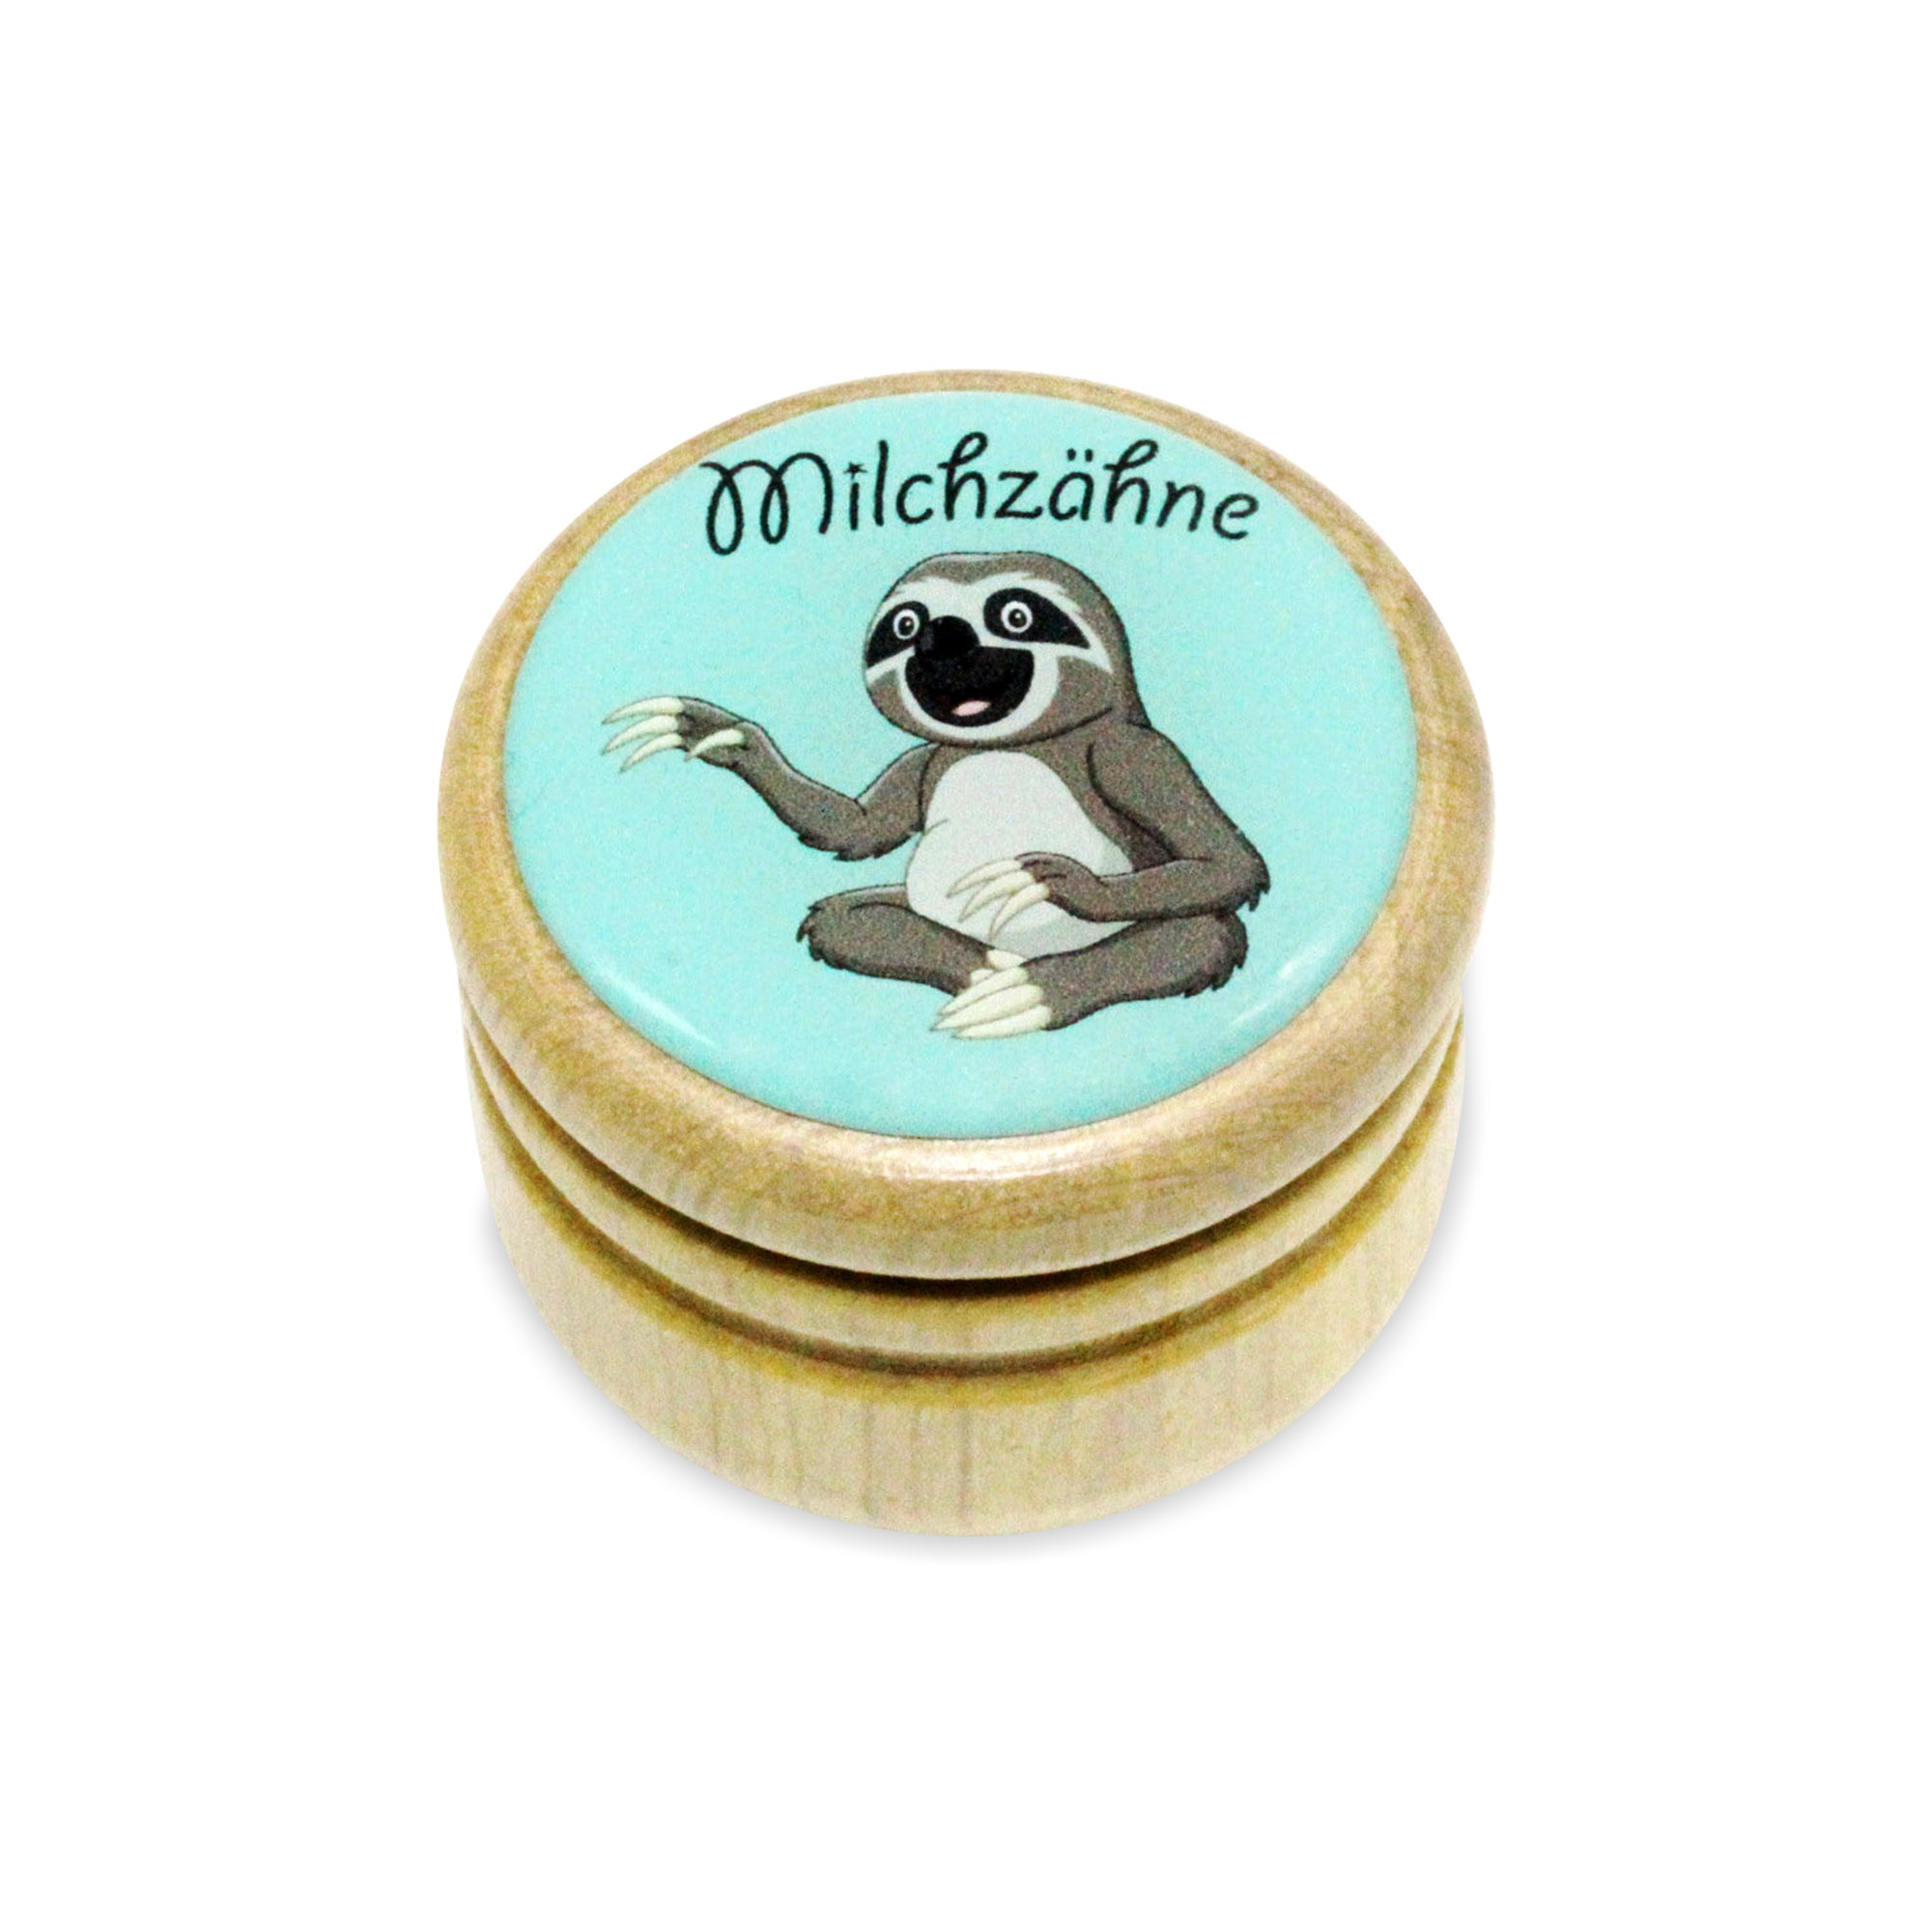 Milchzahndose Faultier Zahndose Milchzähne Bilderdose aus Holz mit Drehverschluss 44 mm ( Faultier )- 7009